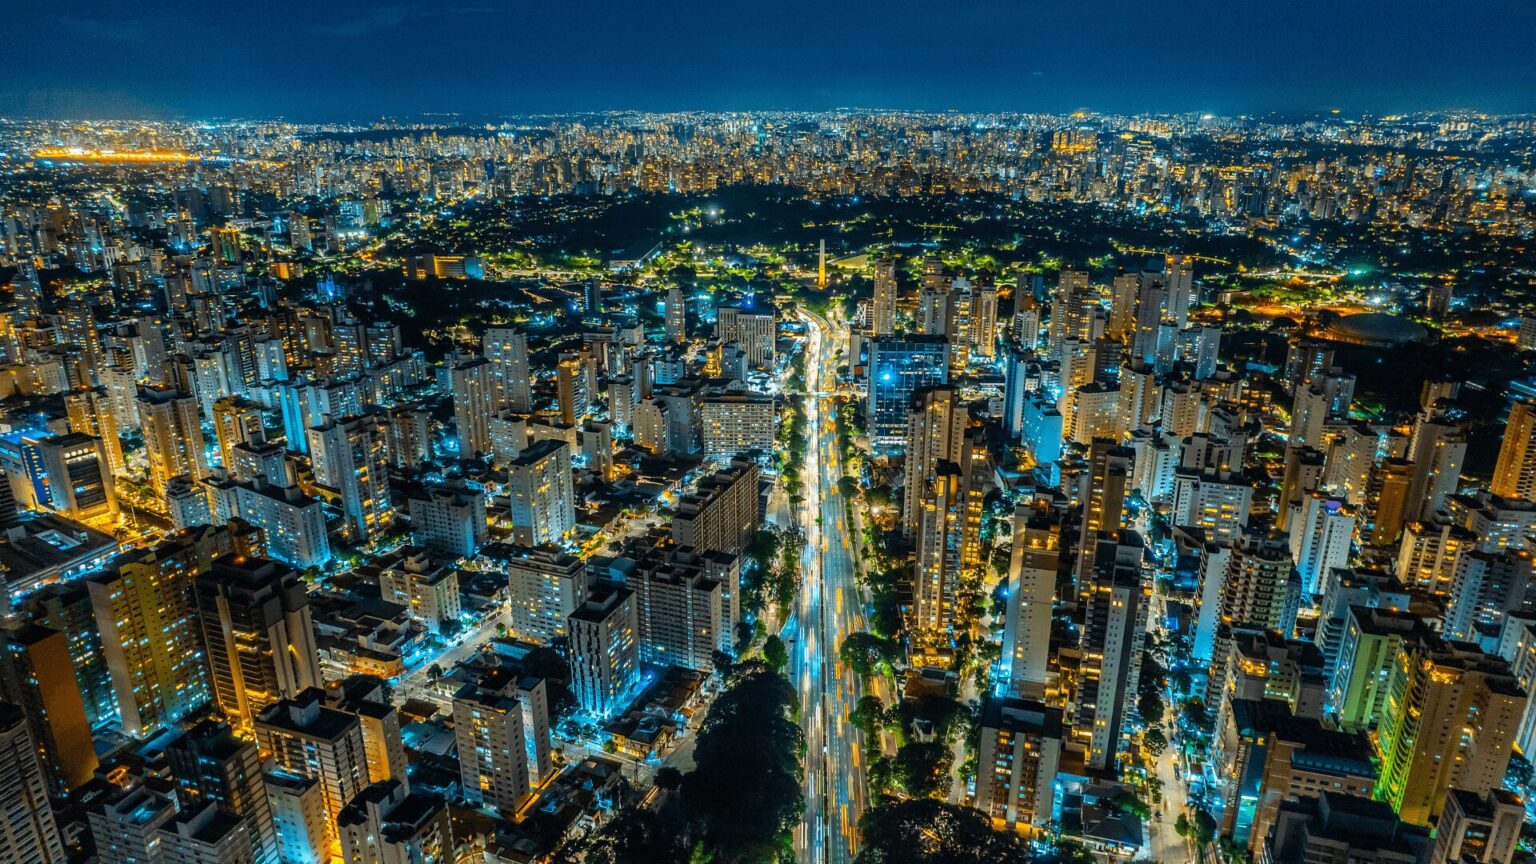 Vista aérea da cidade de São Paulo a noite.